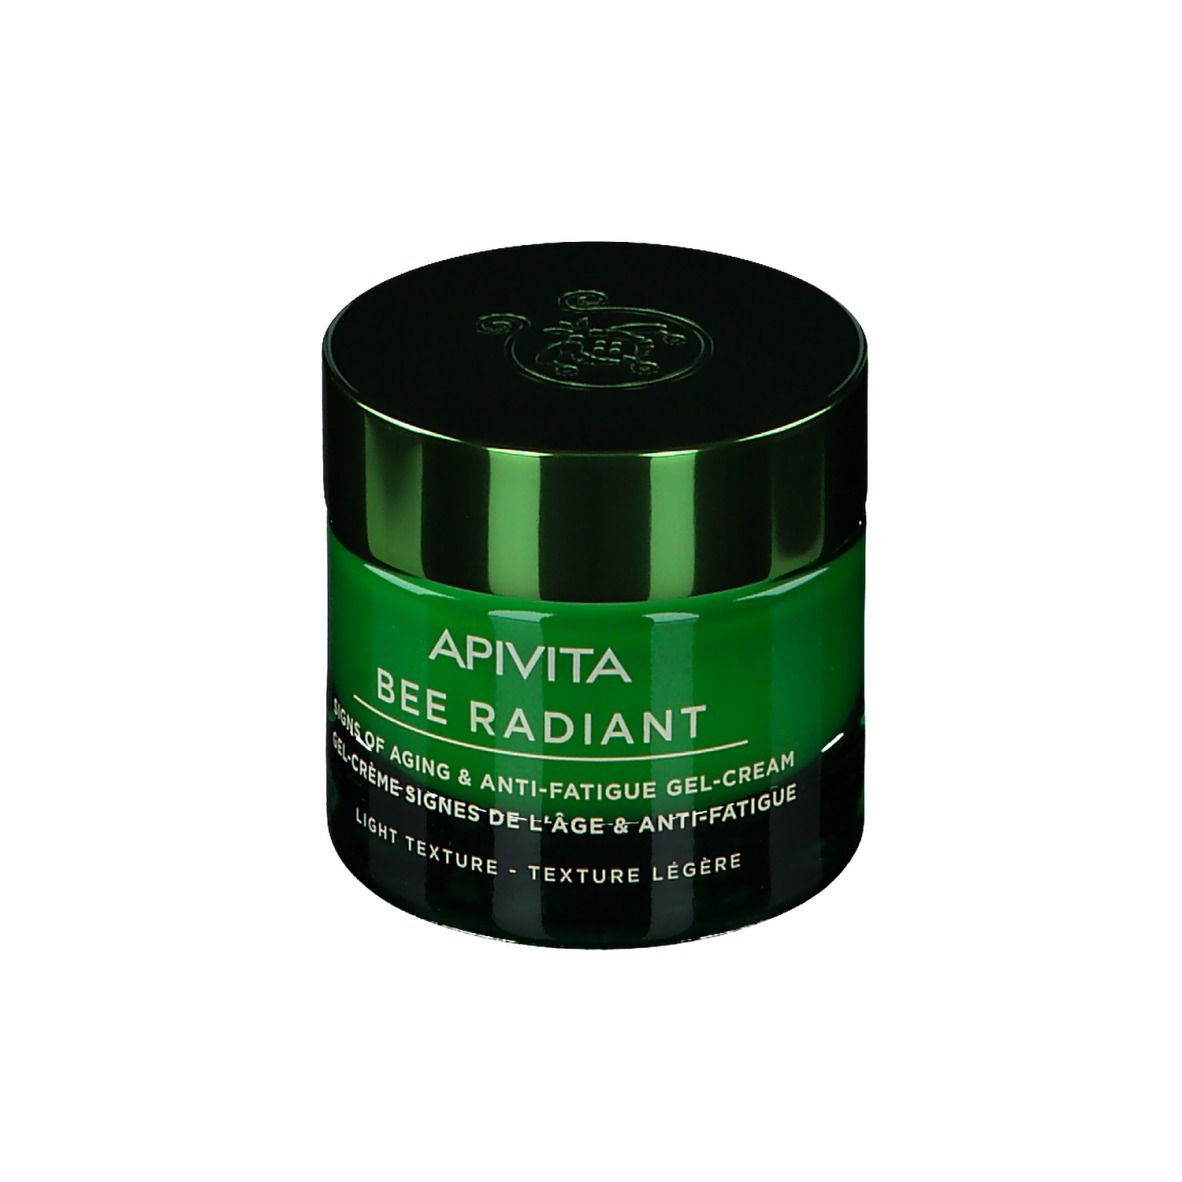 Apivita Bee Radiant Gel-Crème Signes de l'Âge & Anti-Fatigue Texture Légère